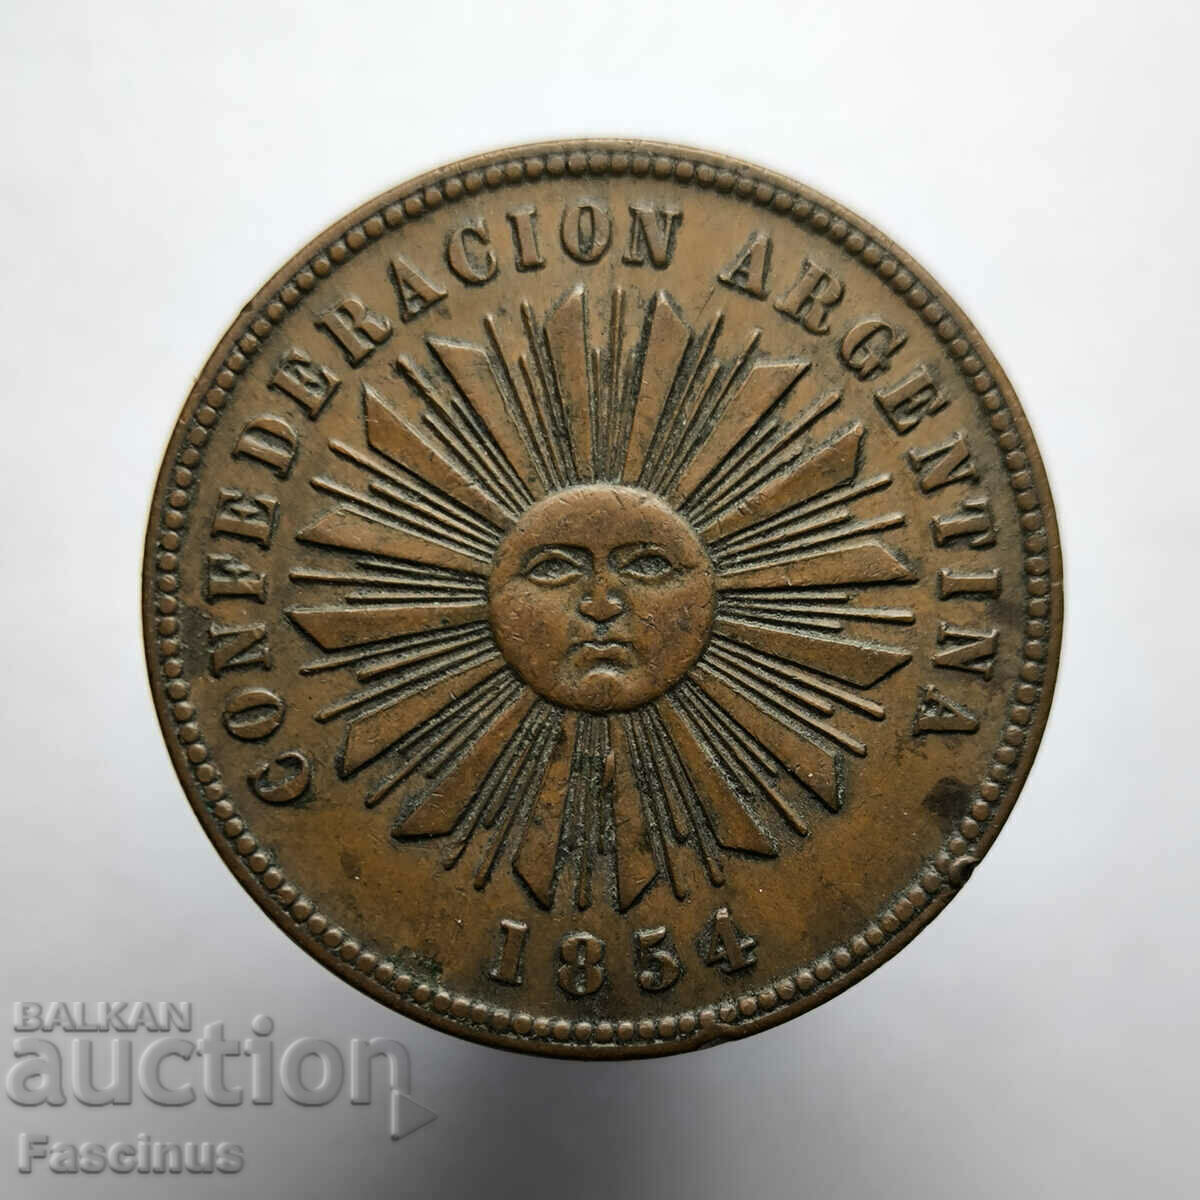 Rare copper coin 2 centavos 1854 Argentina